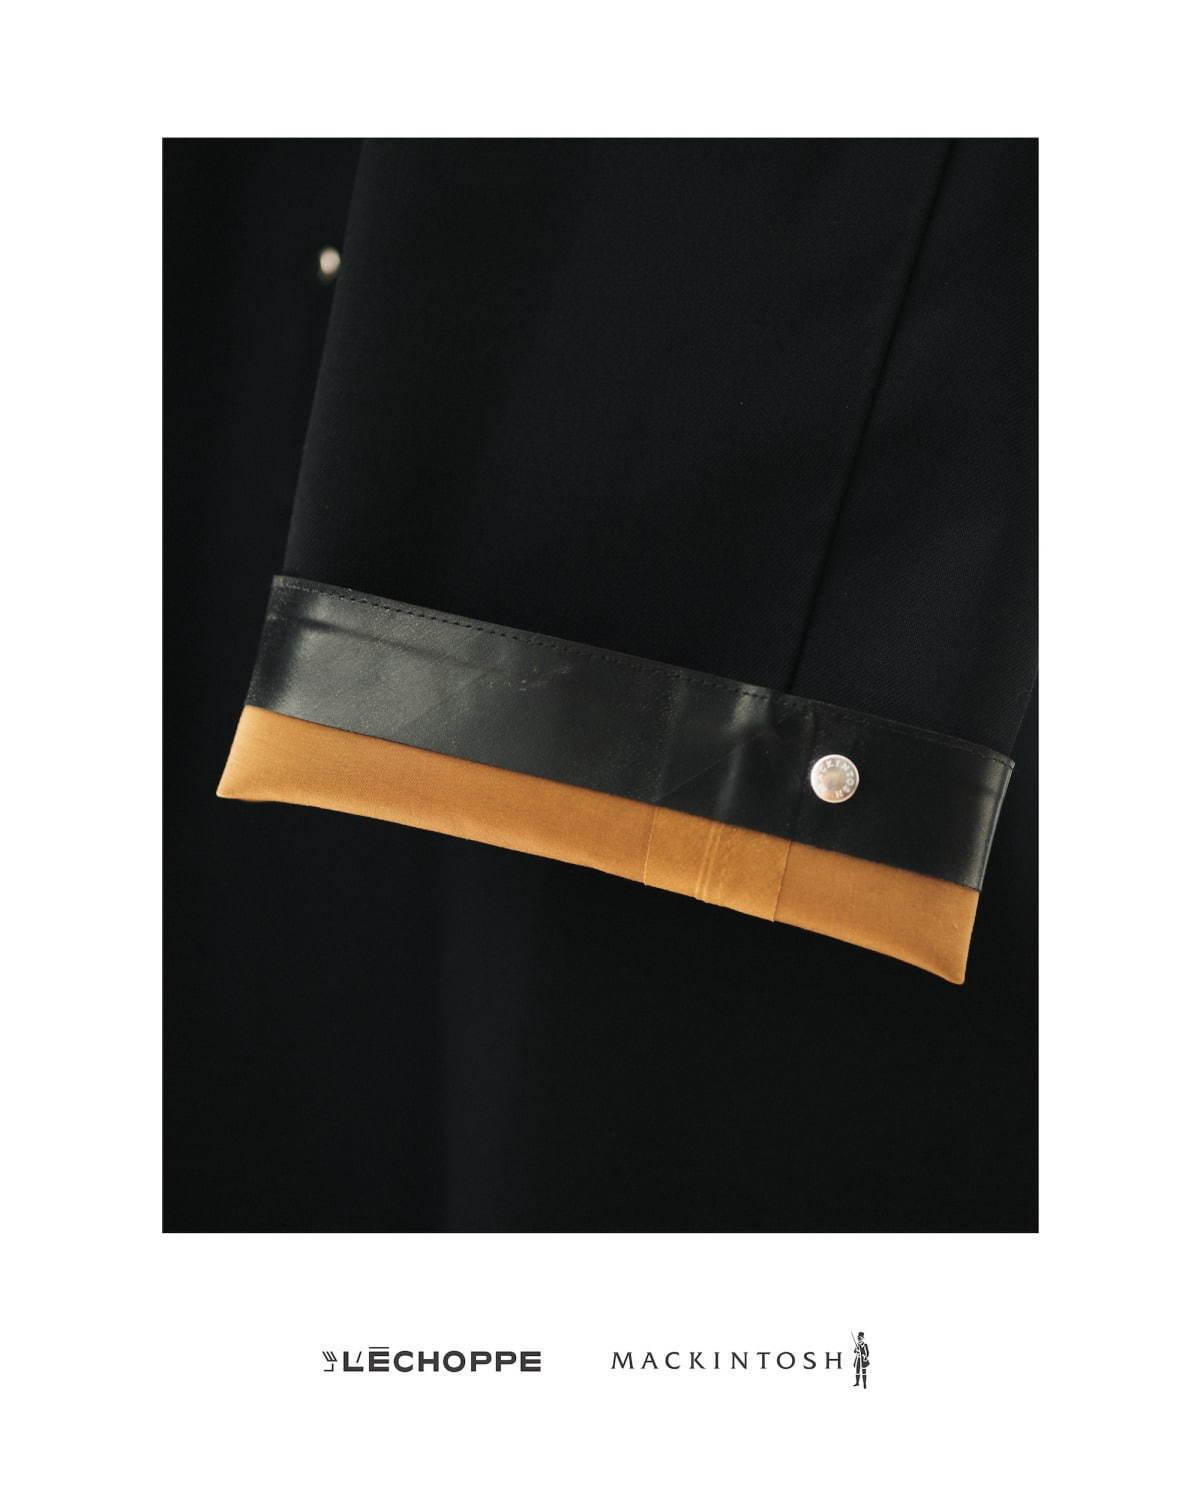 マッキントッシュ×レショップのコート「ダンバー」最高級ウールモヘアのスリット入りオーバーサイズ コピー